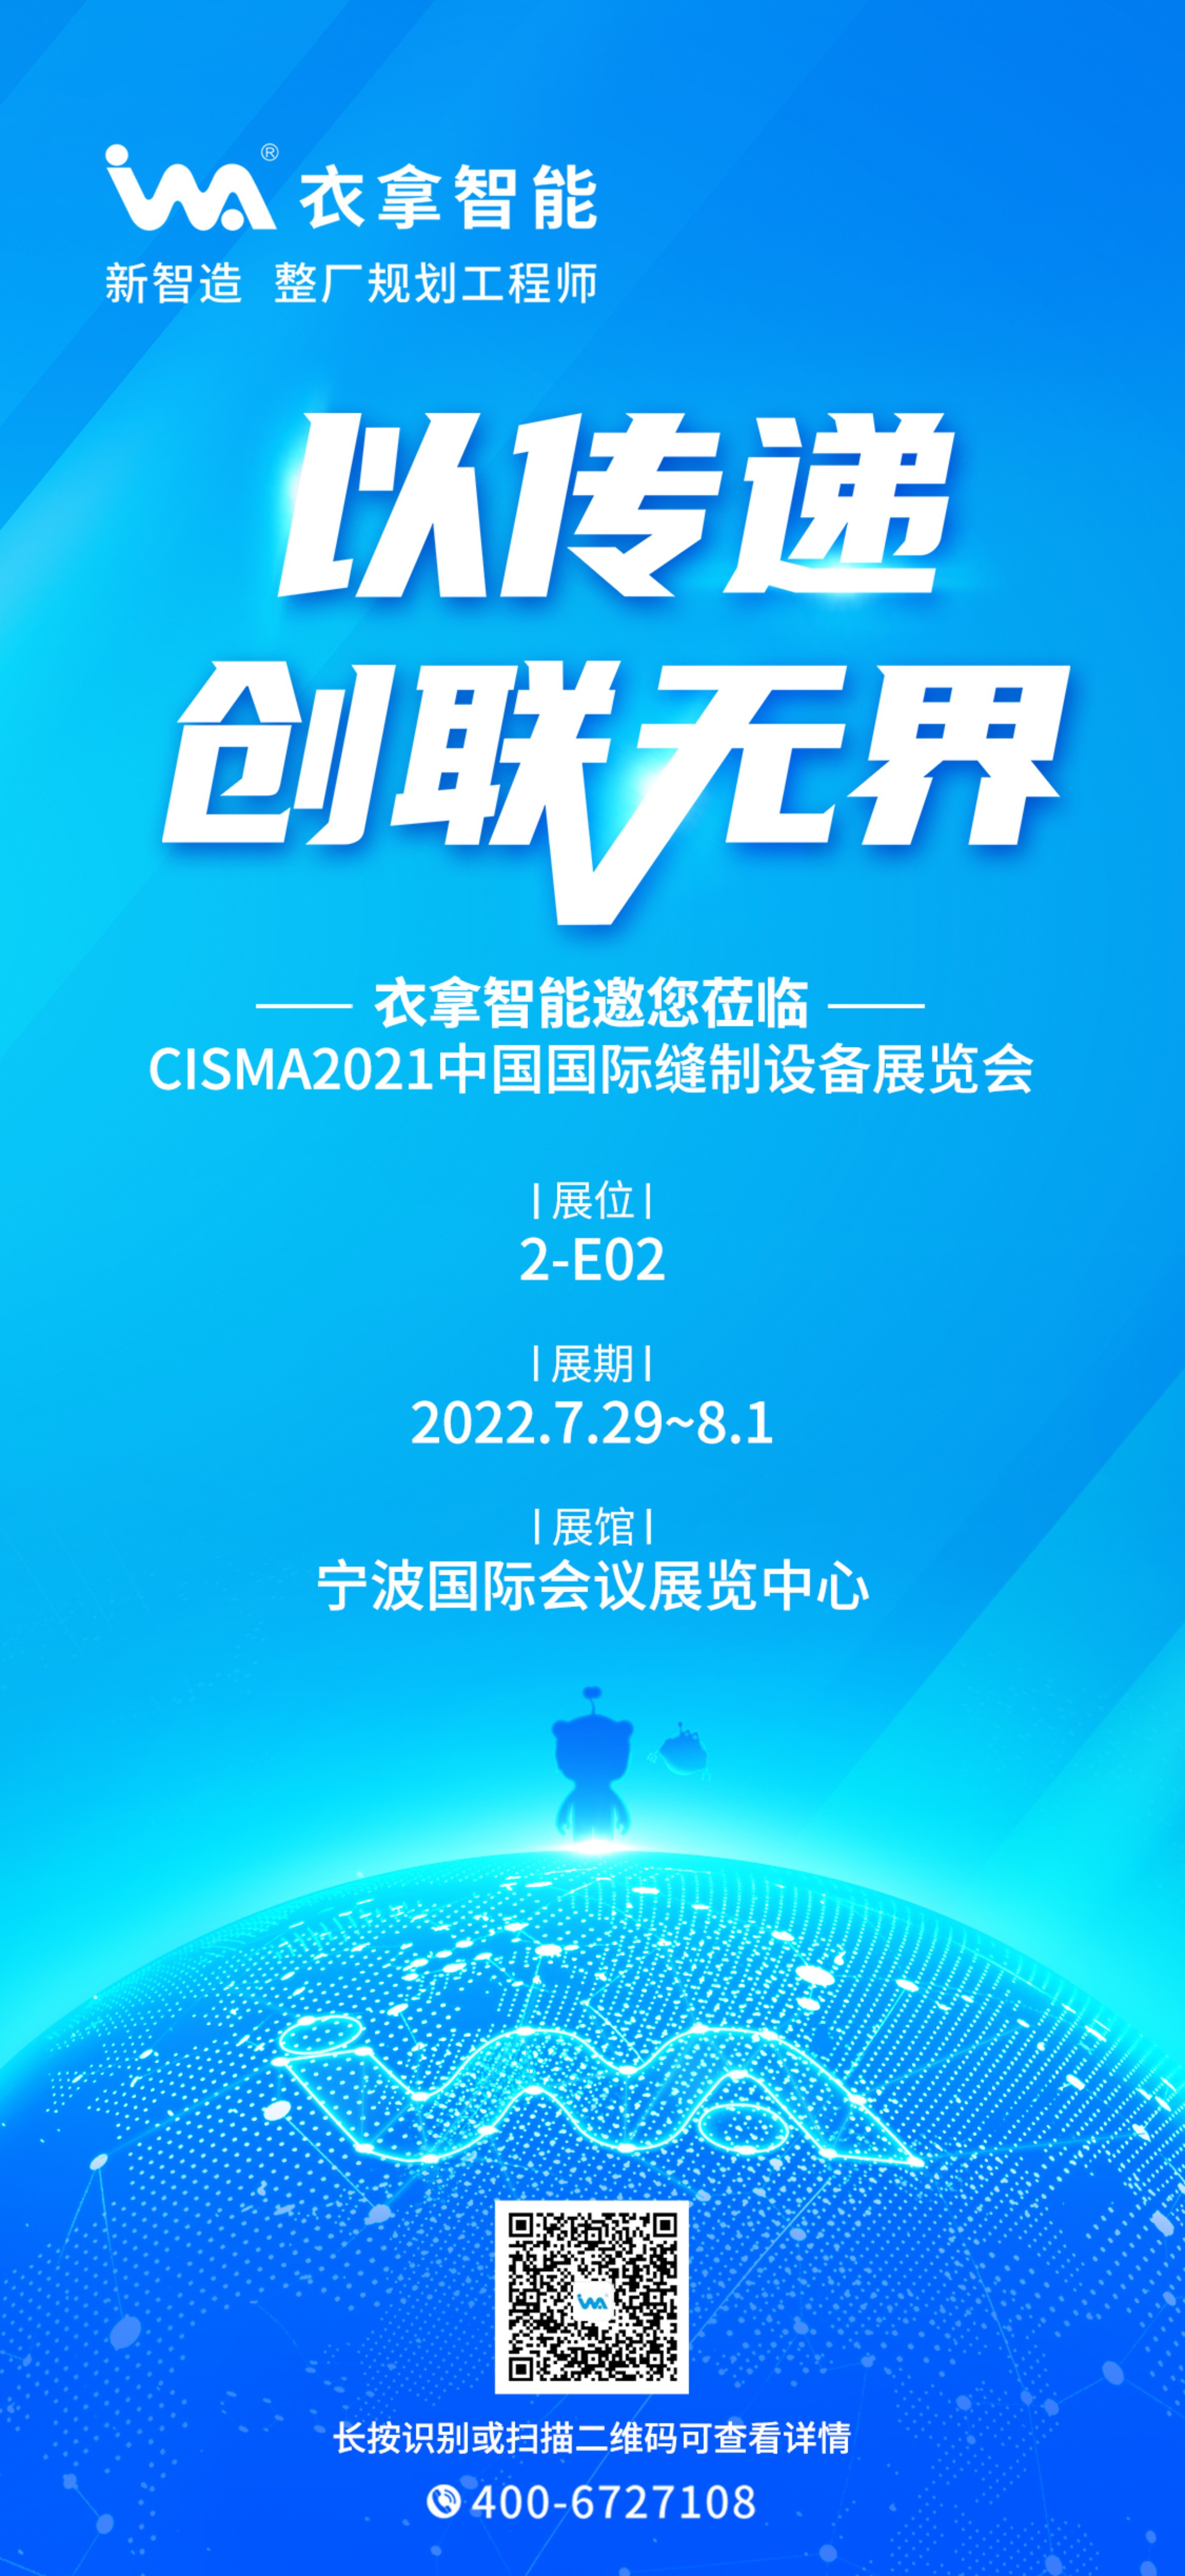 衣拿智能 | 与您相约CISMA2021中国国际缝制设备展览会